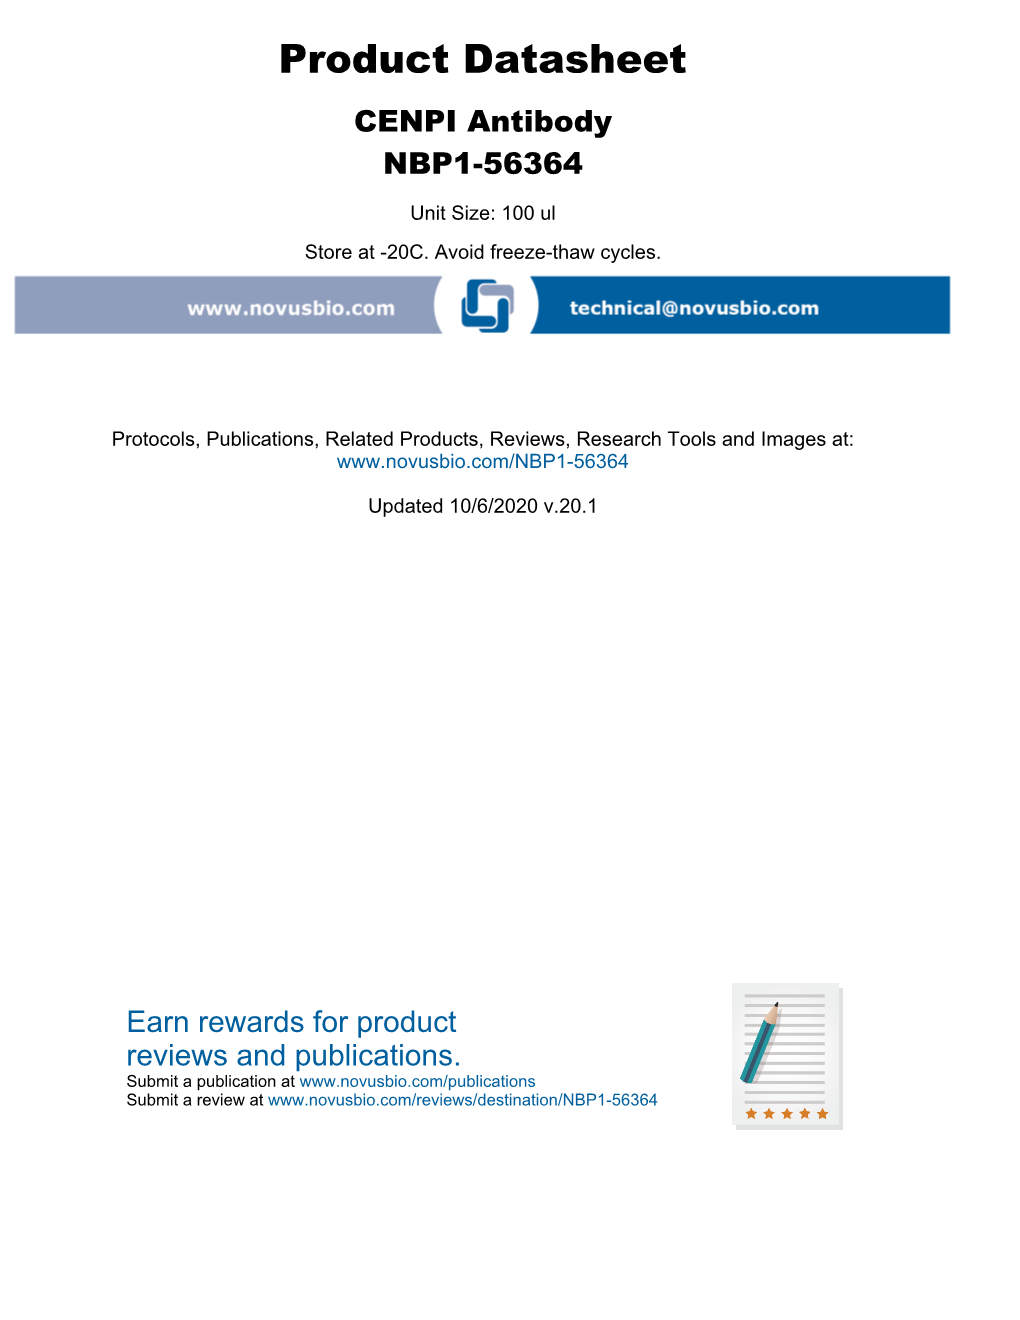 Product Datasheet CENPI Antibody NBP1-56364